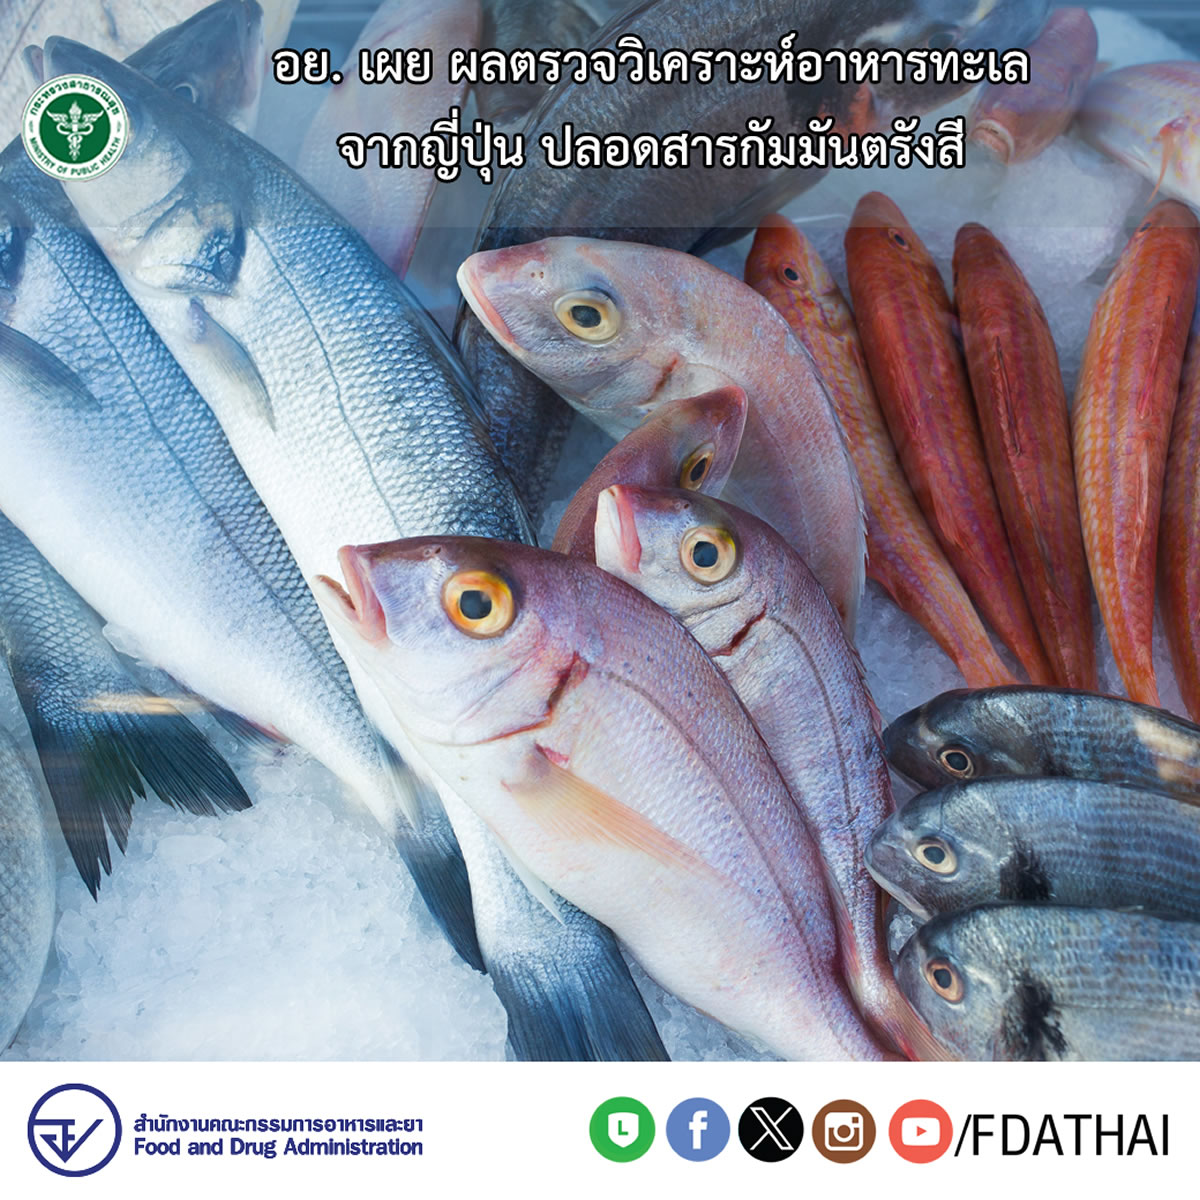 タイ、日本から輸入される魚介類は安全と発表